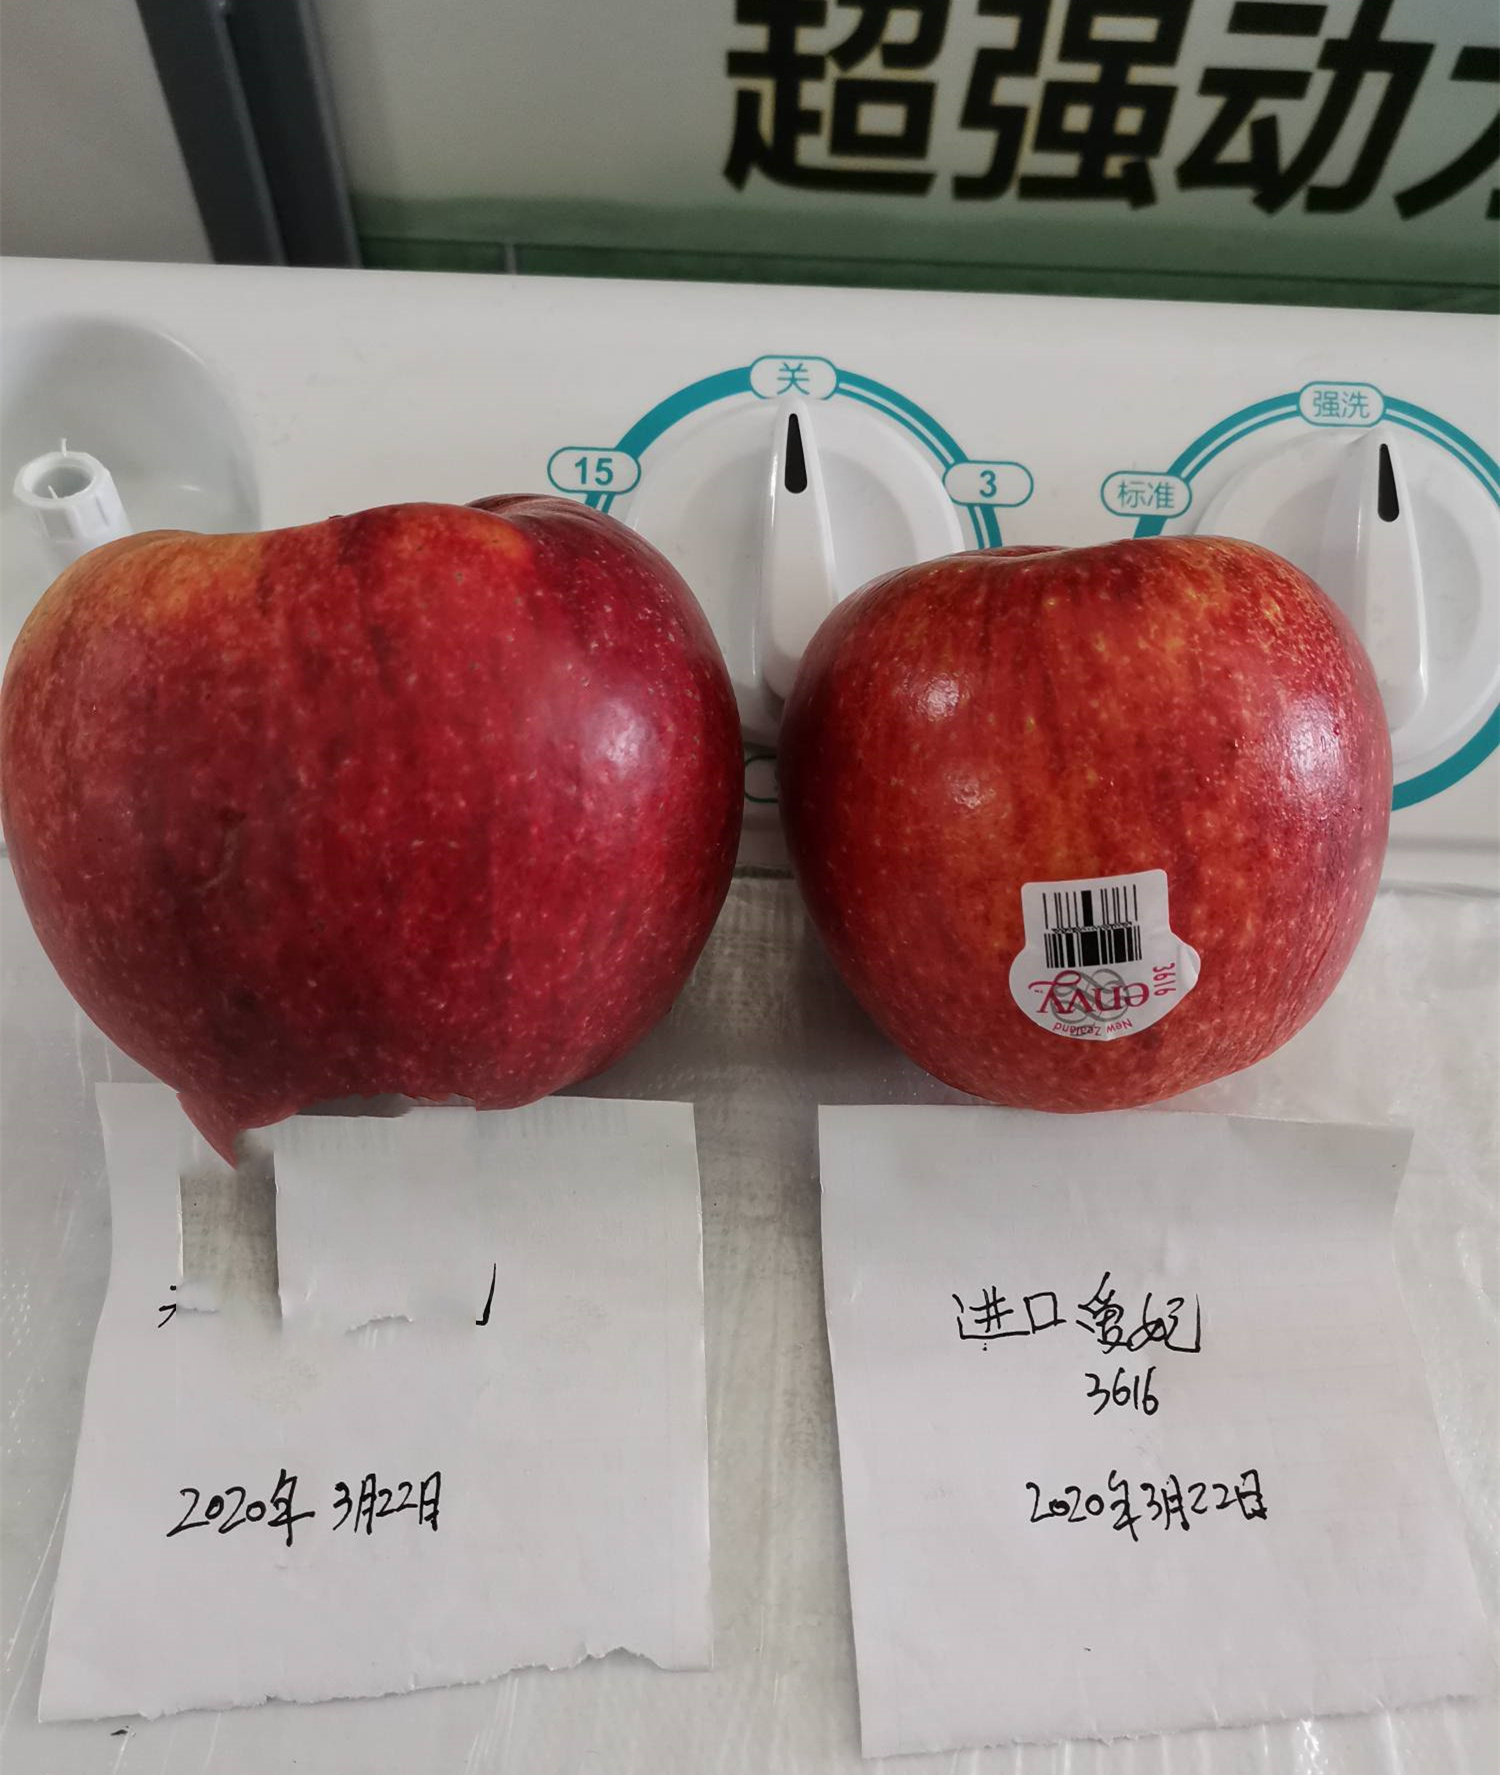 明月苹果树苗品种说明,脱毒m9t337砧木红思尼克苹果树苗